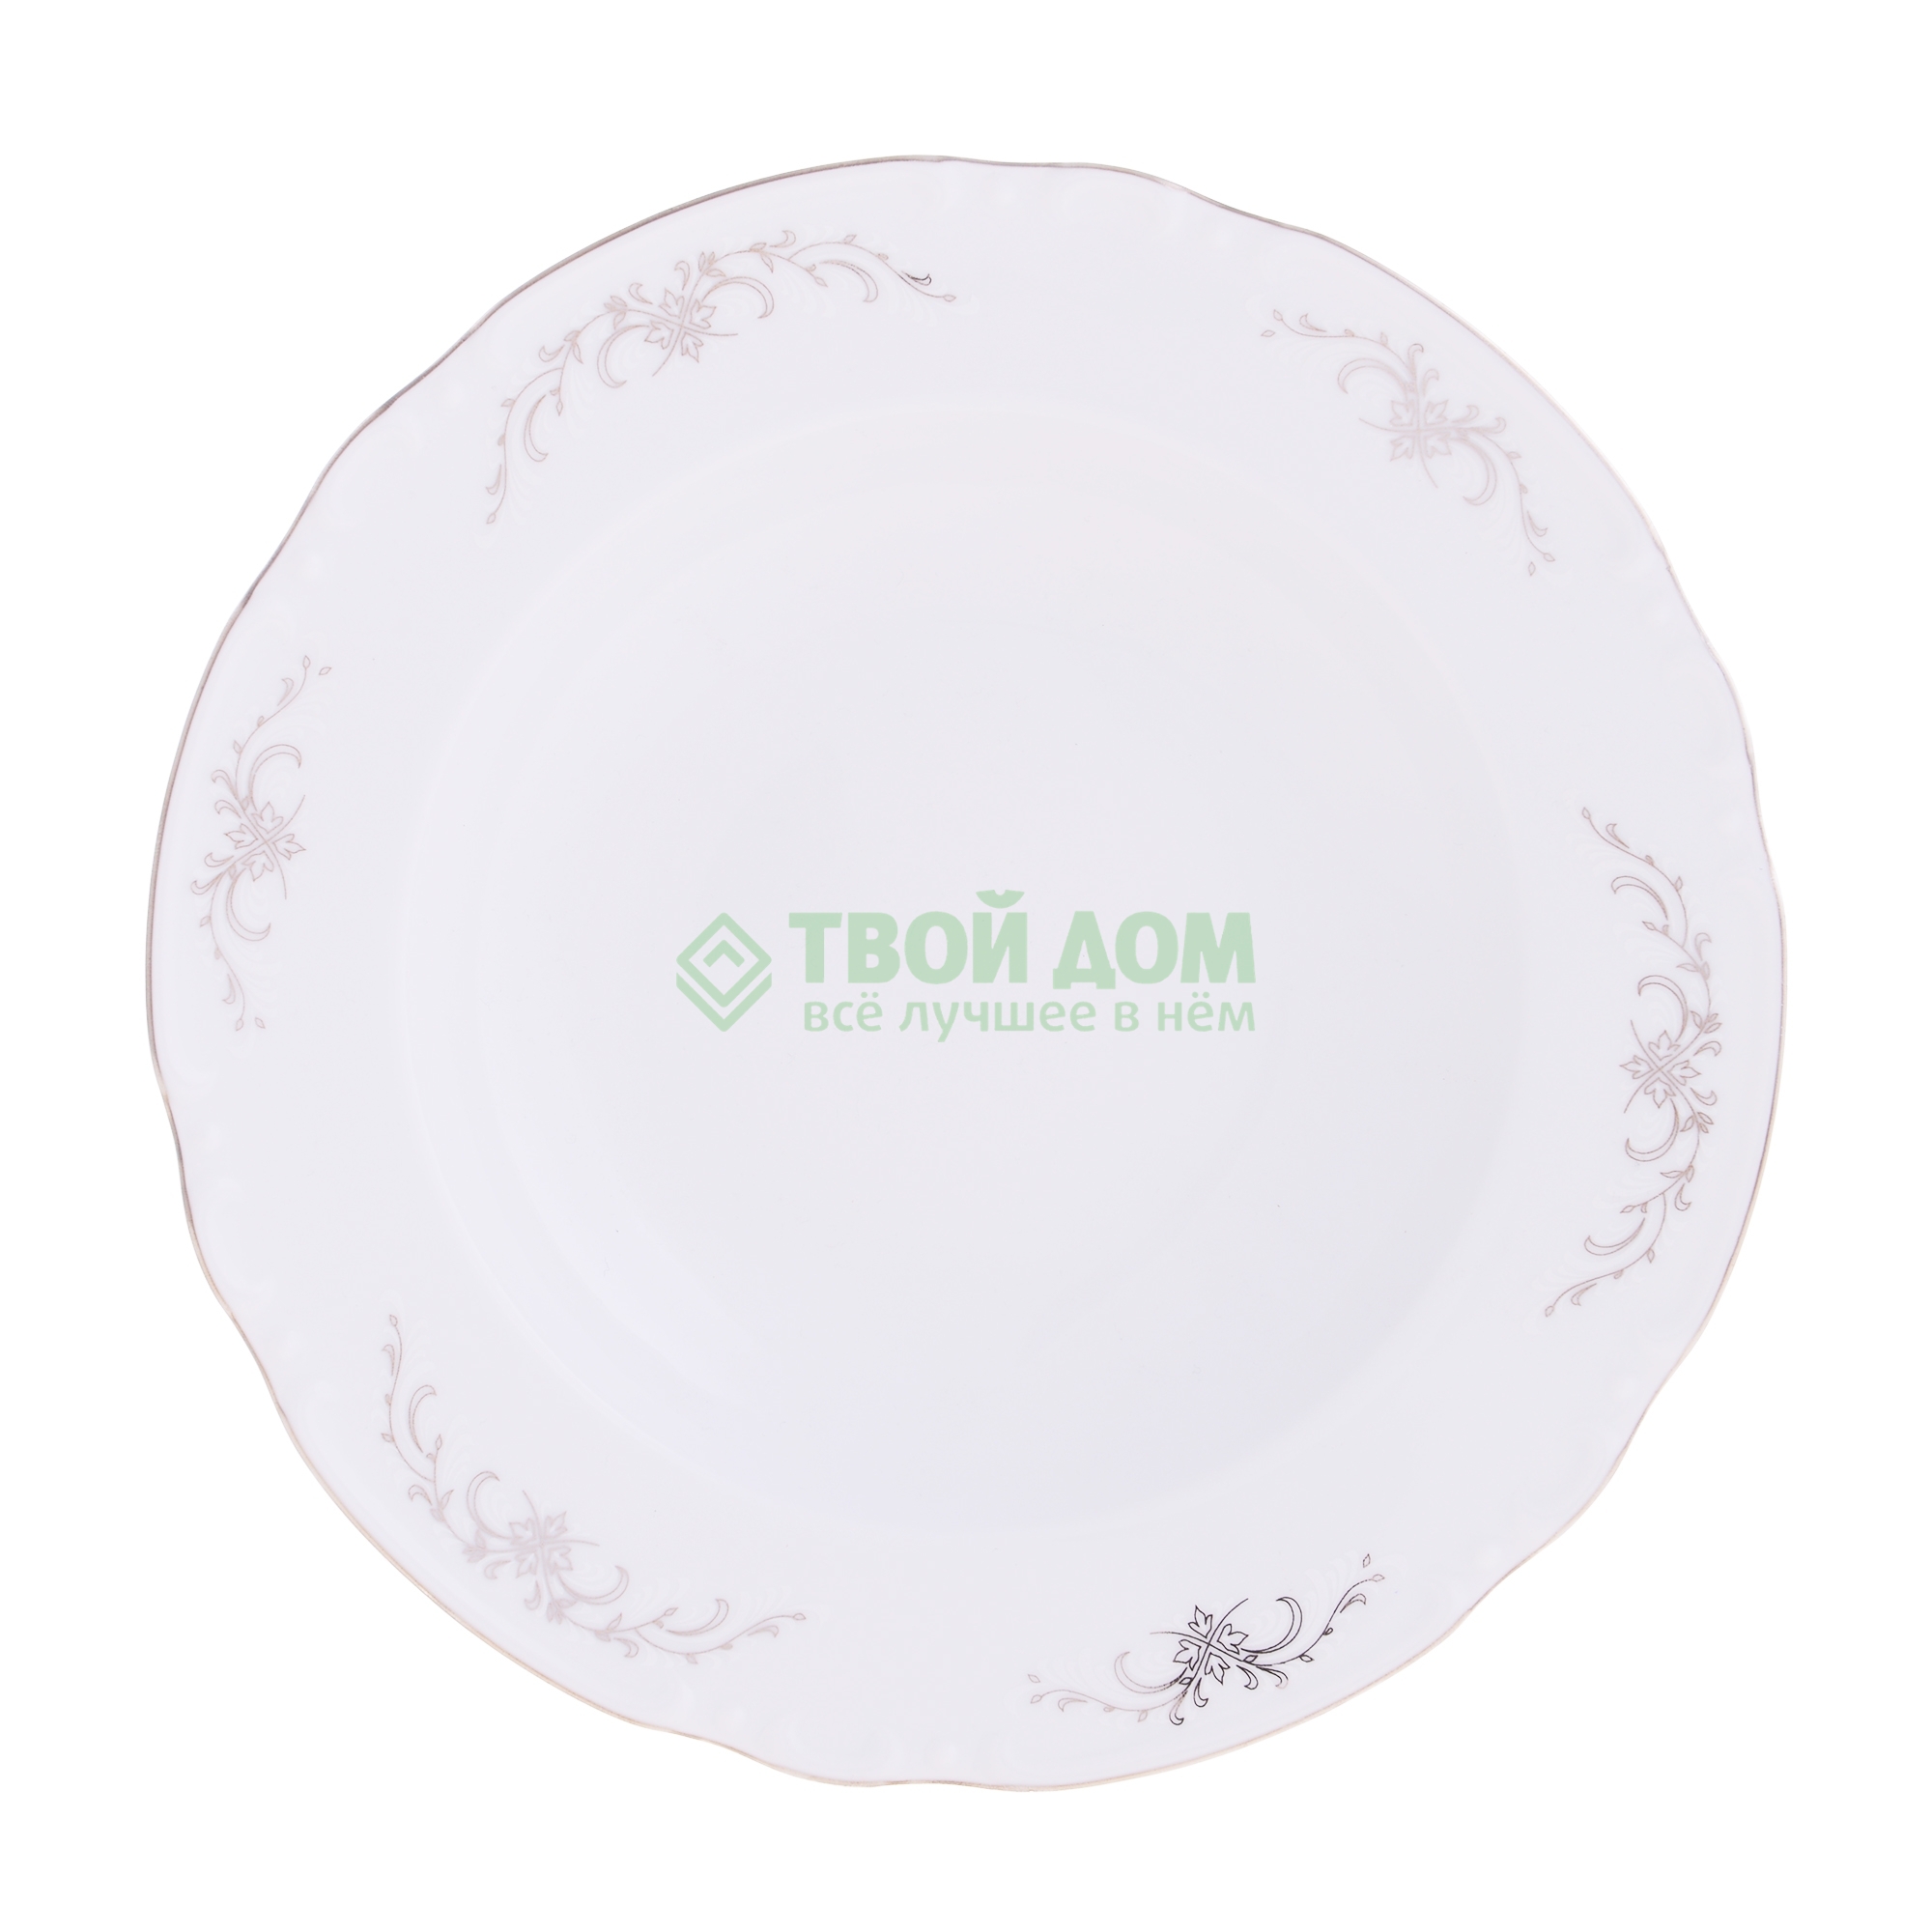 Тарелка Thun Констанция 23 см тарелка мелкая thun констанция 24 см серебристые колосья